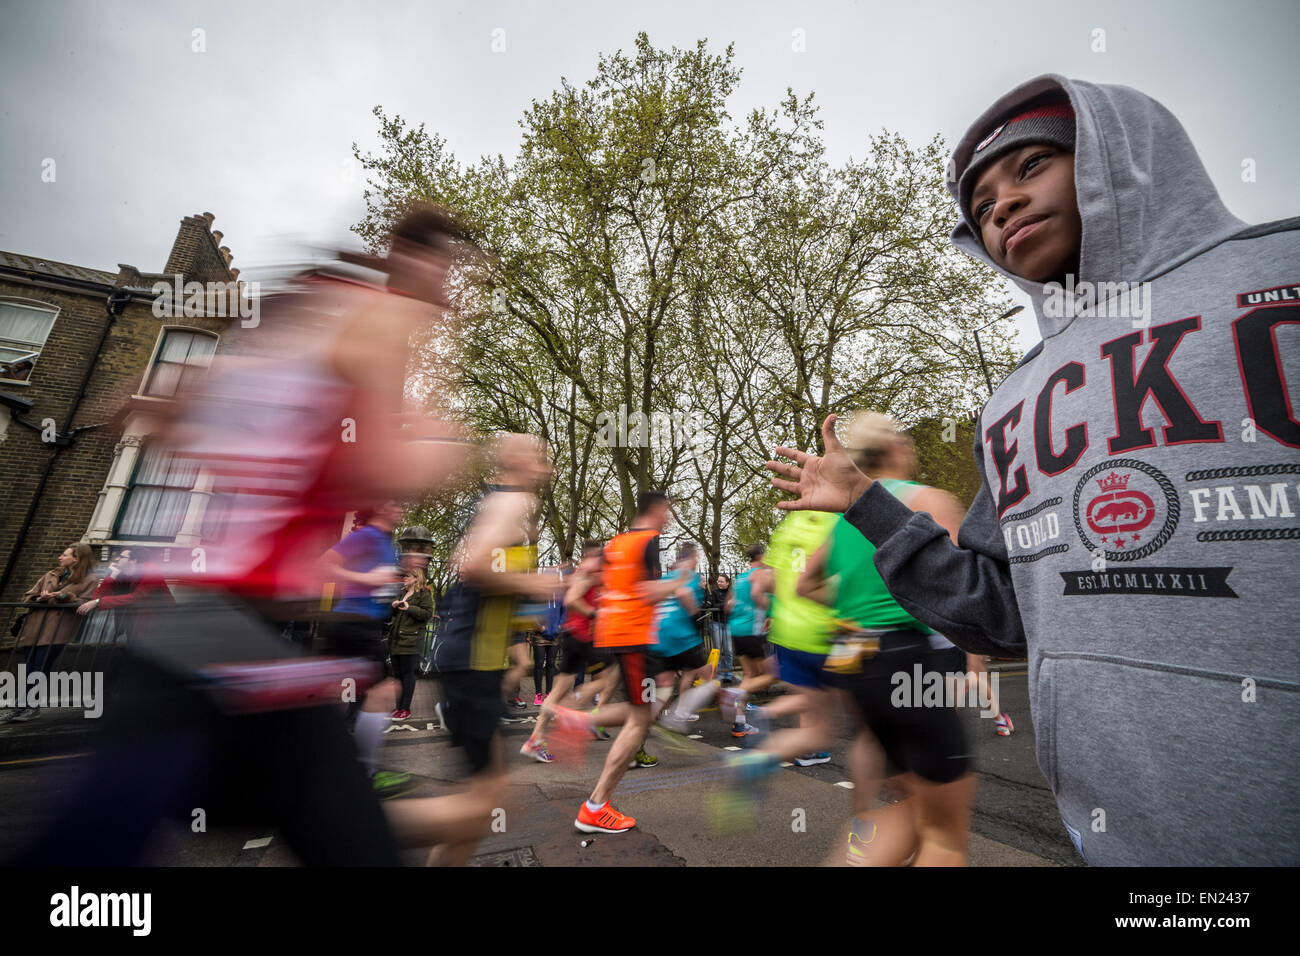 Londres, Royaume-Uni. 26 avril, 2015. 35e Marathon de Londres passe par Deptford dans le sud-est de Londres. Crédit : Guy Josse/Alamy Live News Banque D'Images